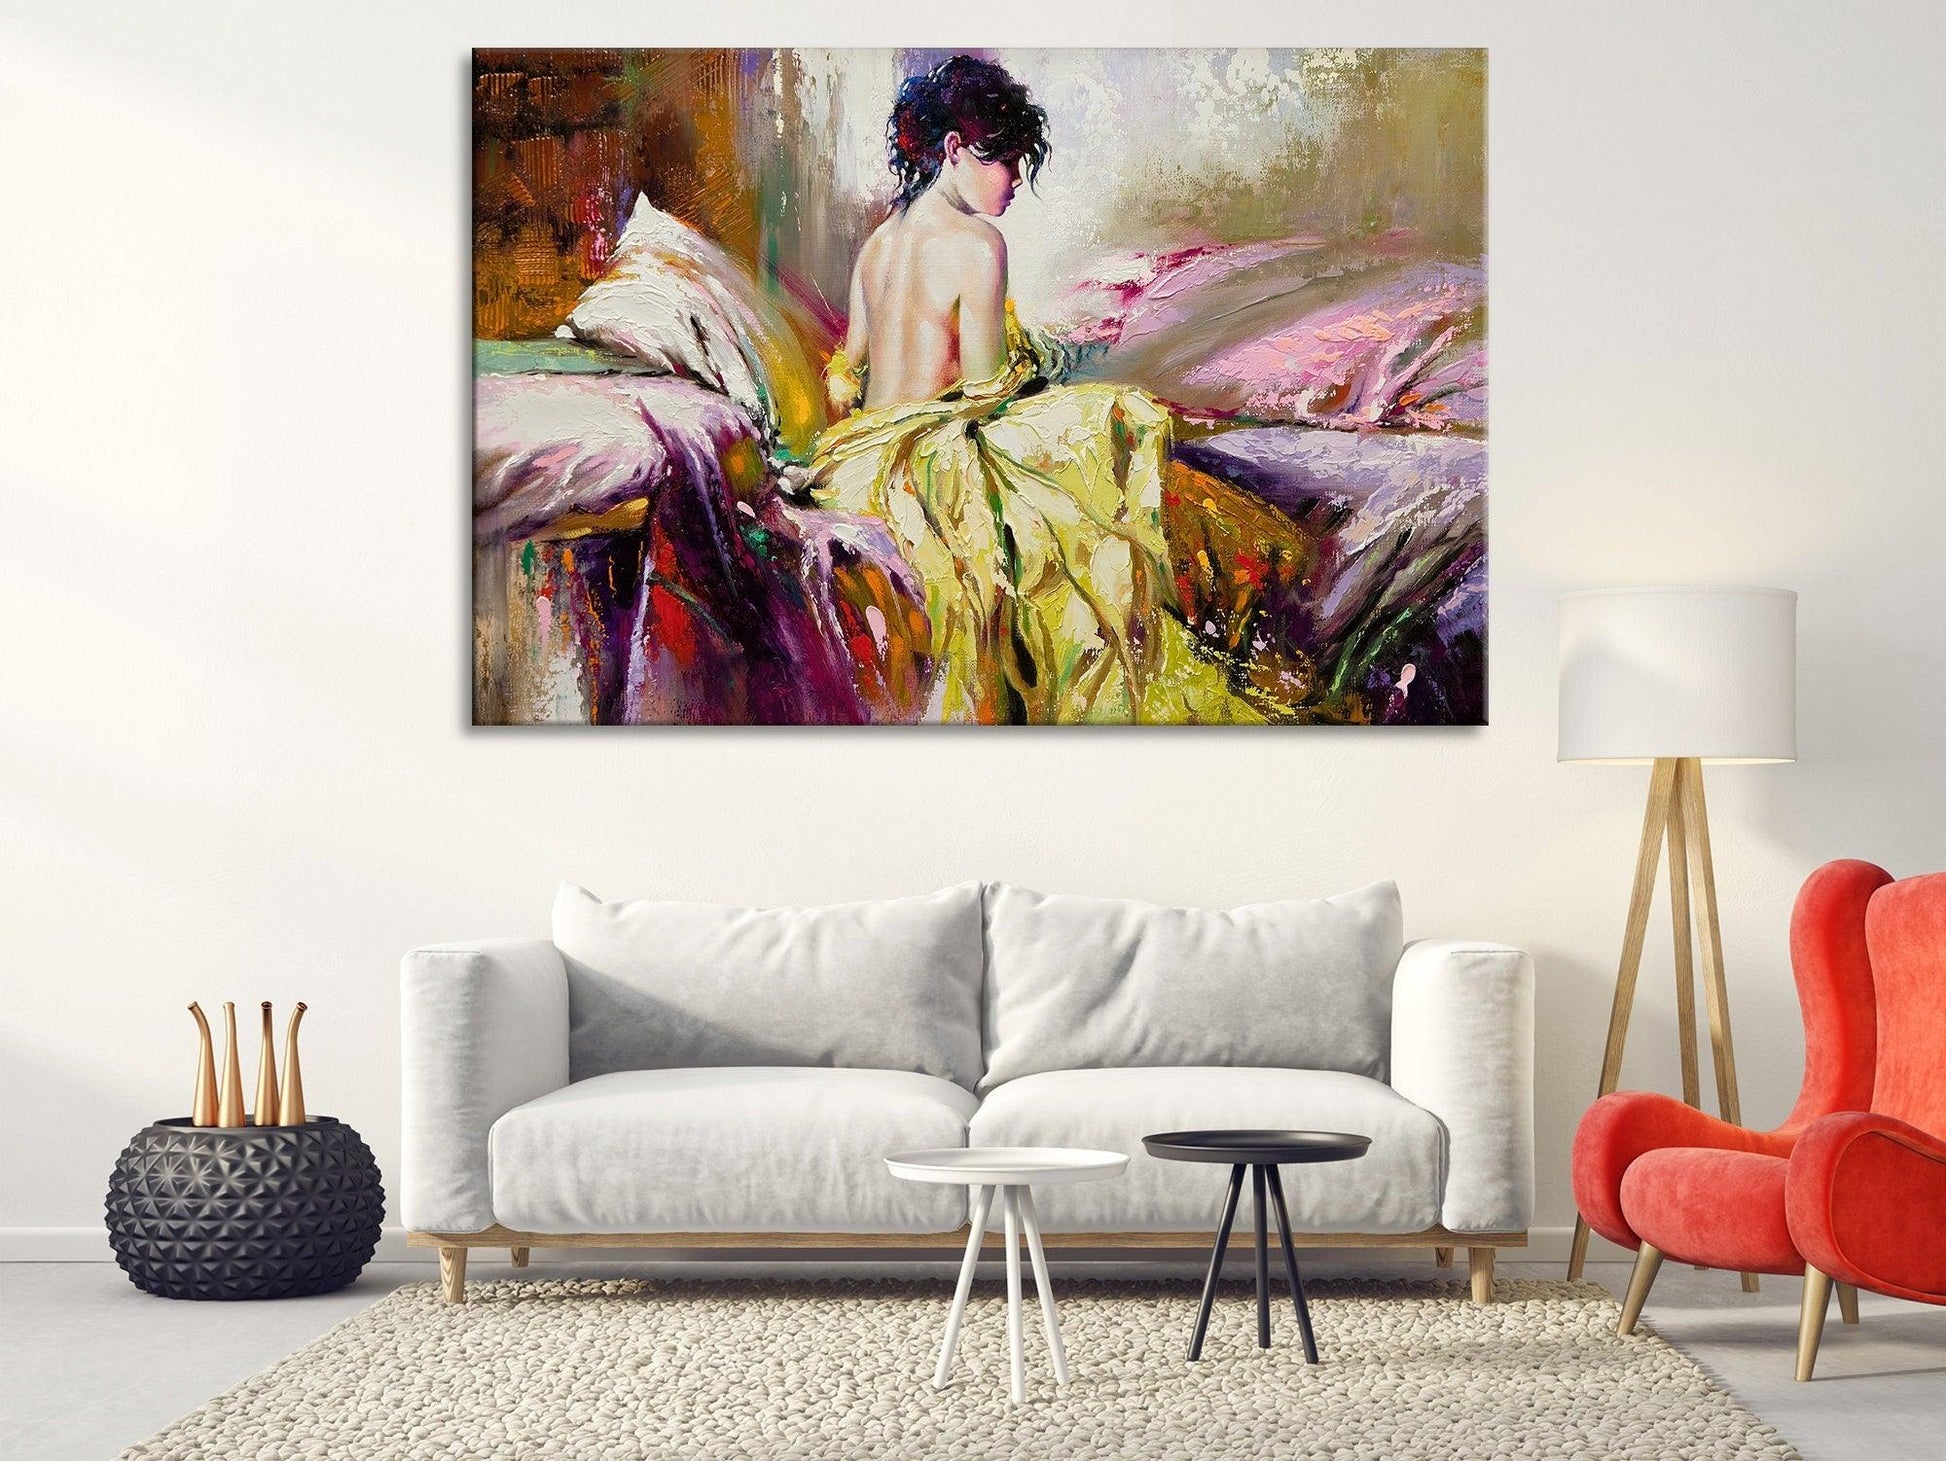 Naked Girl glass wall Art| Naked Girl in Bed, Canvas Wall Art, Sexy Wall Art, Canvas Print, Erotic Wall Art, Nude Art, Erotic poster - TrendiArt